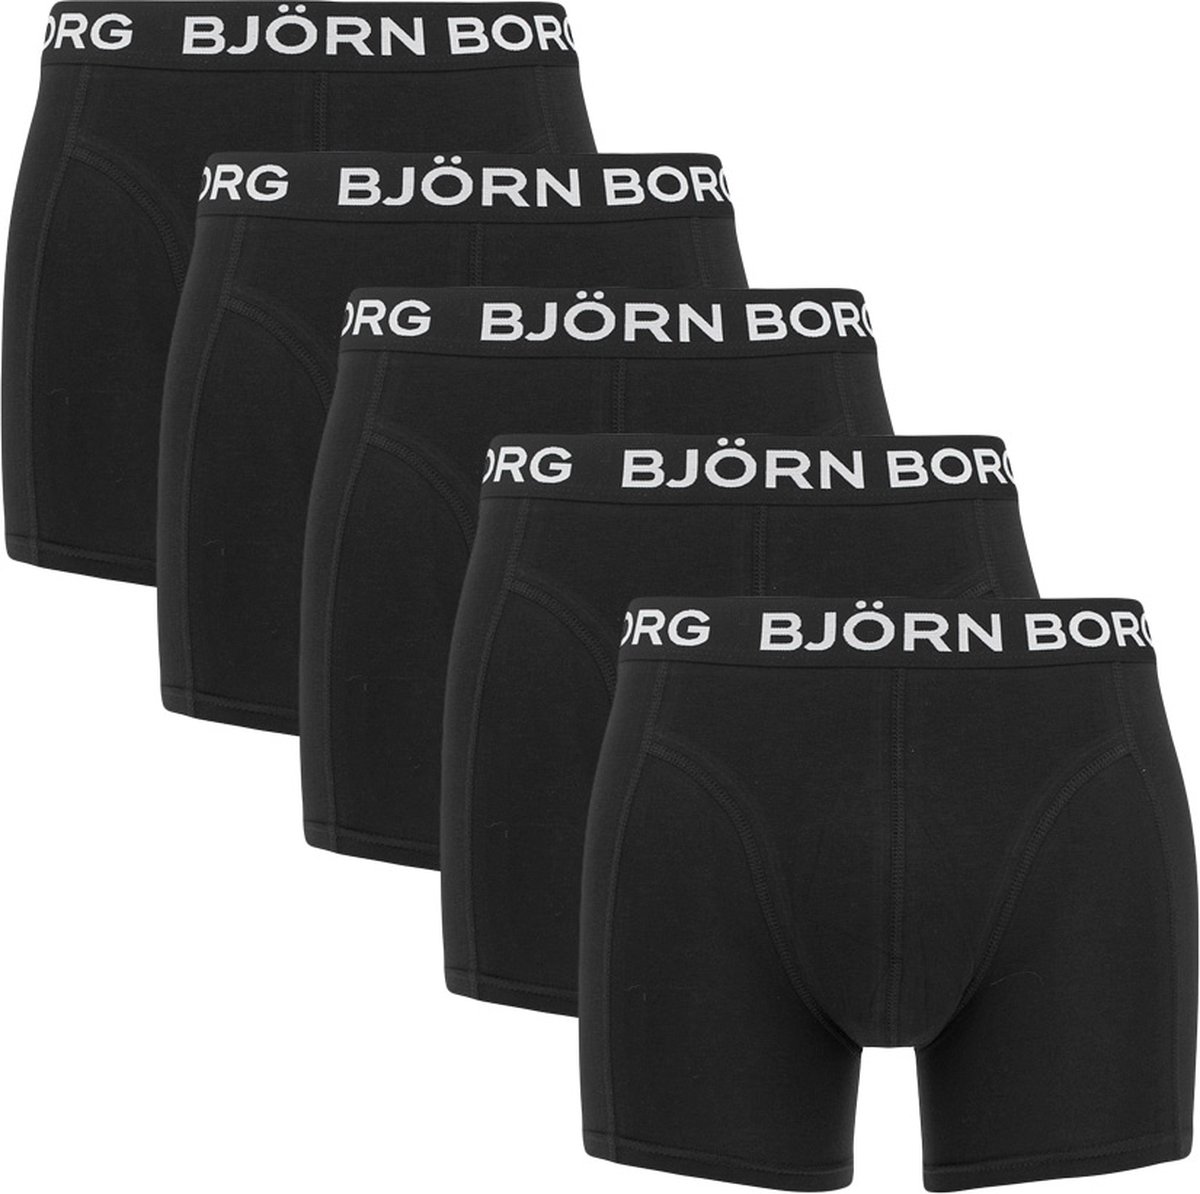 Björn Borg Boxershort Essential - Onderbroeken - Boxer - 5 stuks - Heren - Maat XL - Zwart - Björn Borg